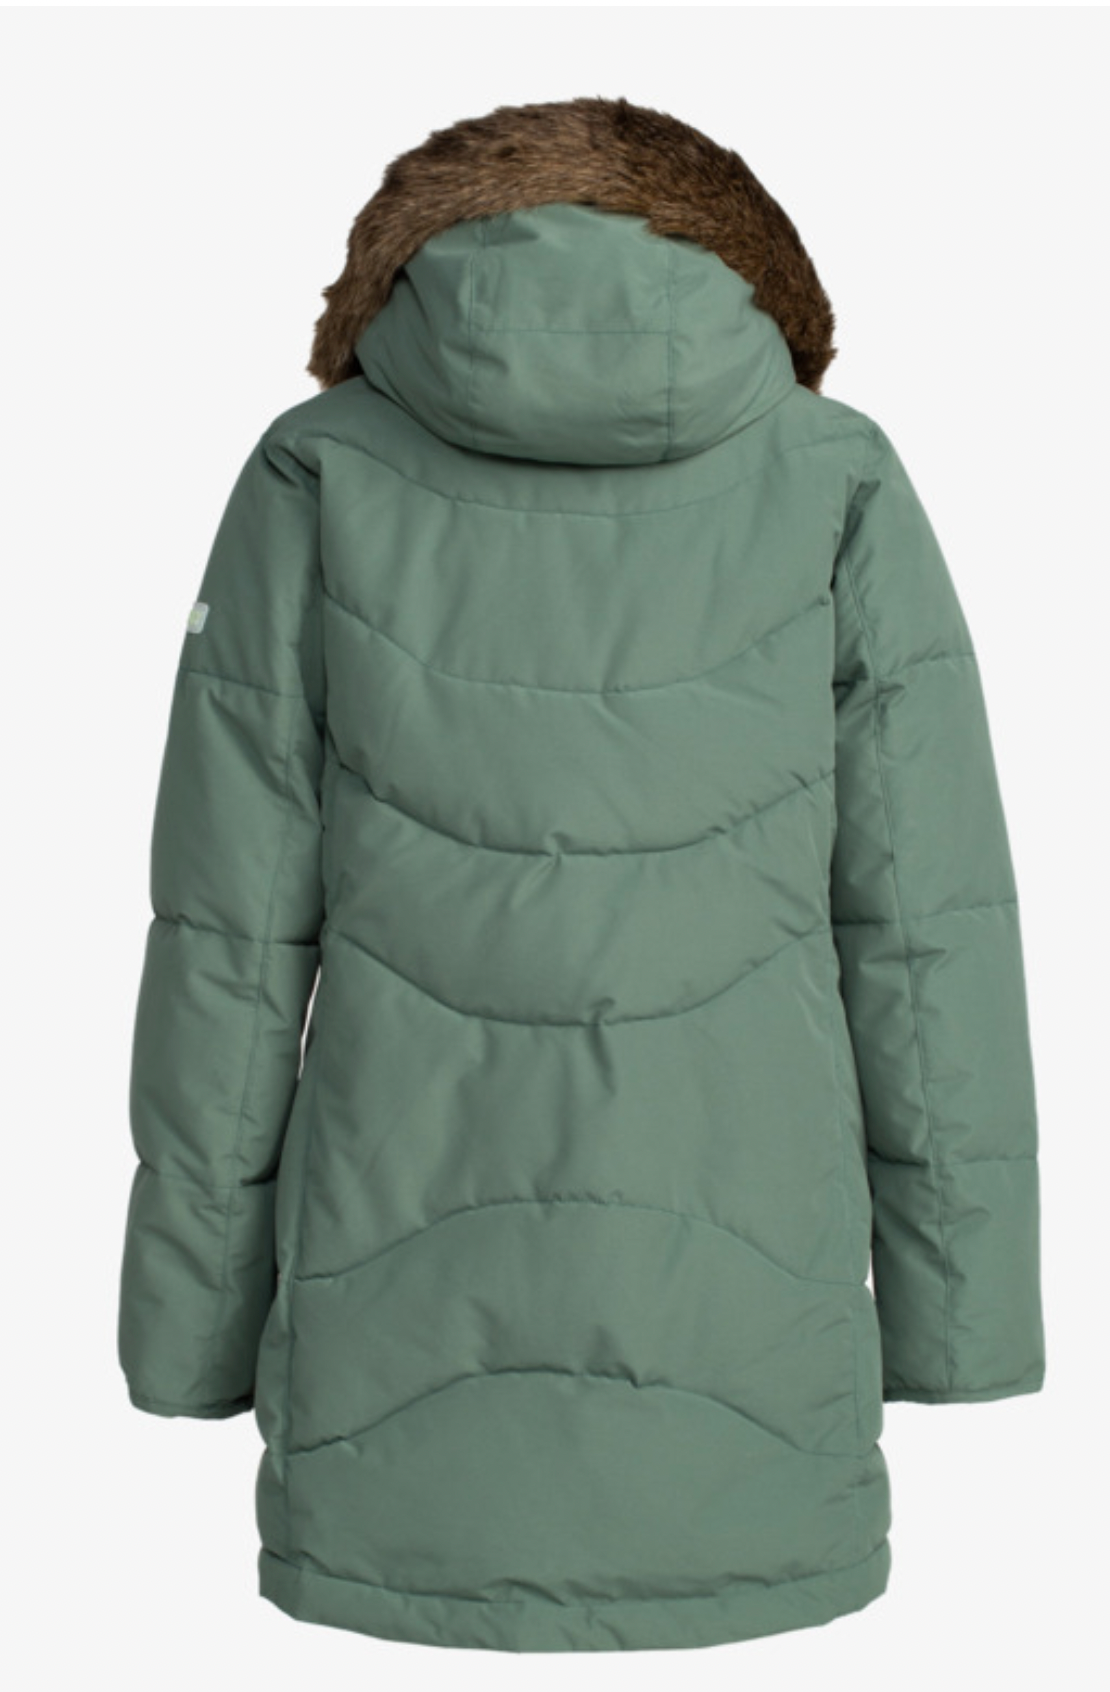 ROXY Ellie - Longline Winter Jacket for Women